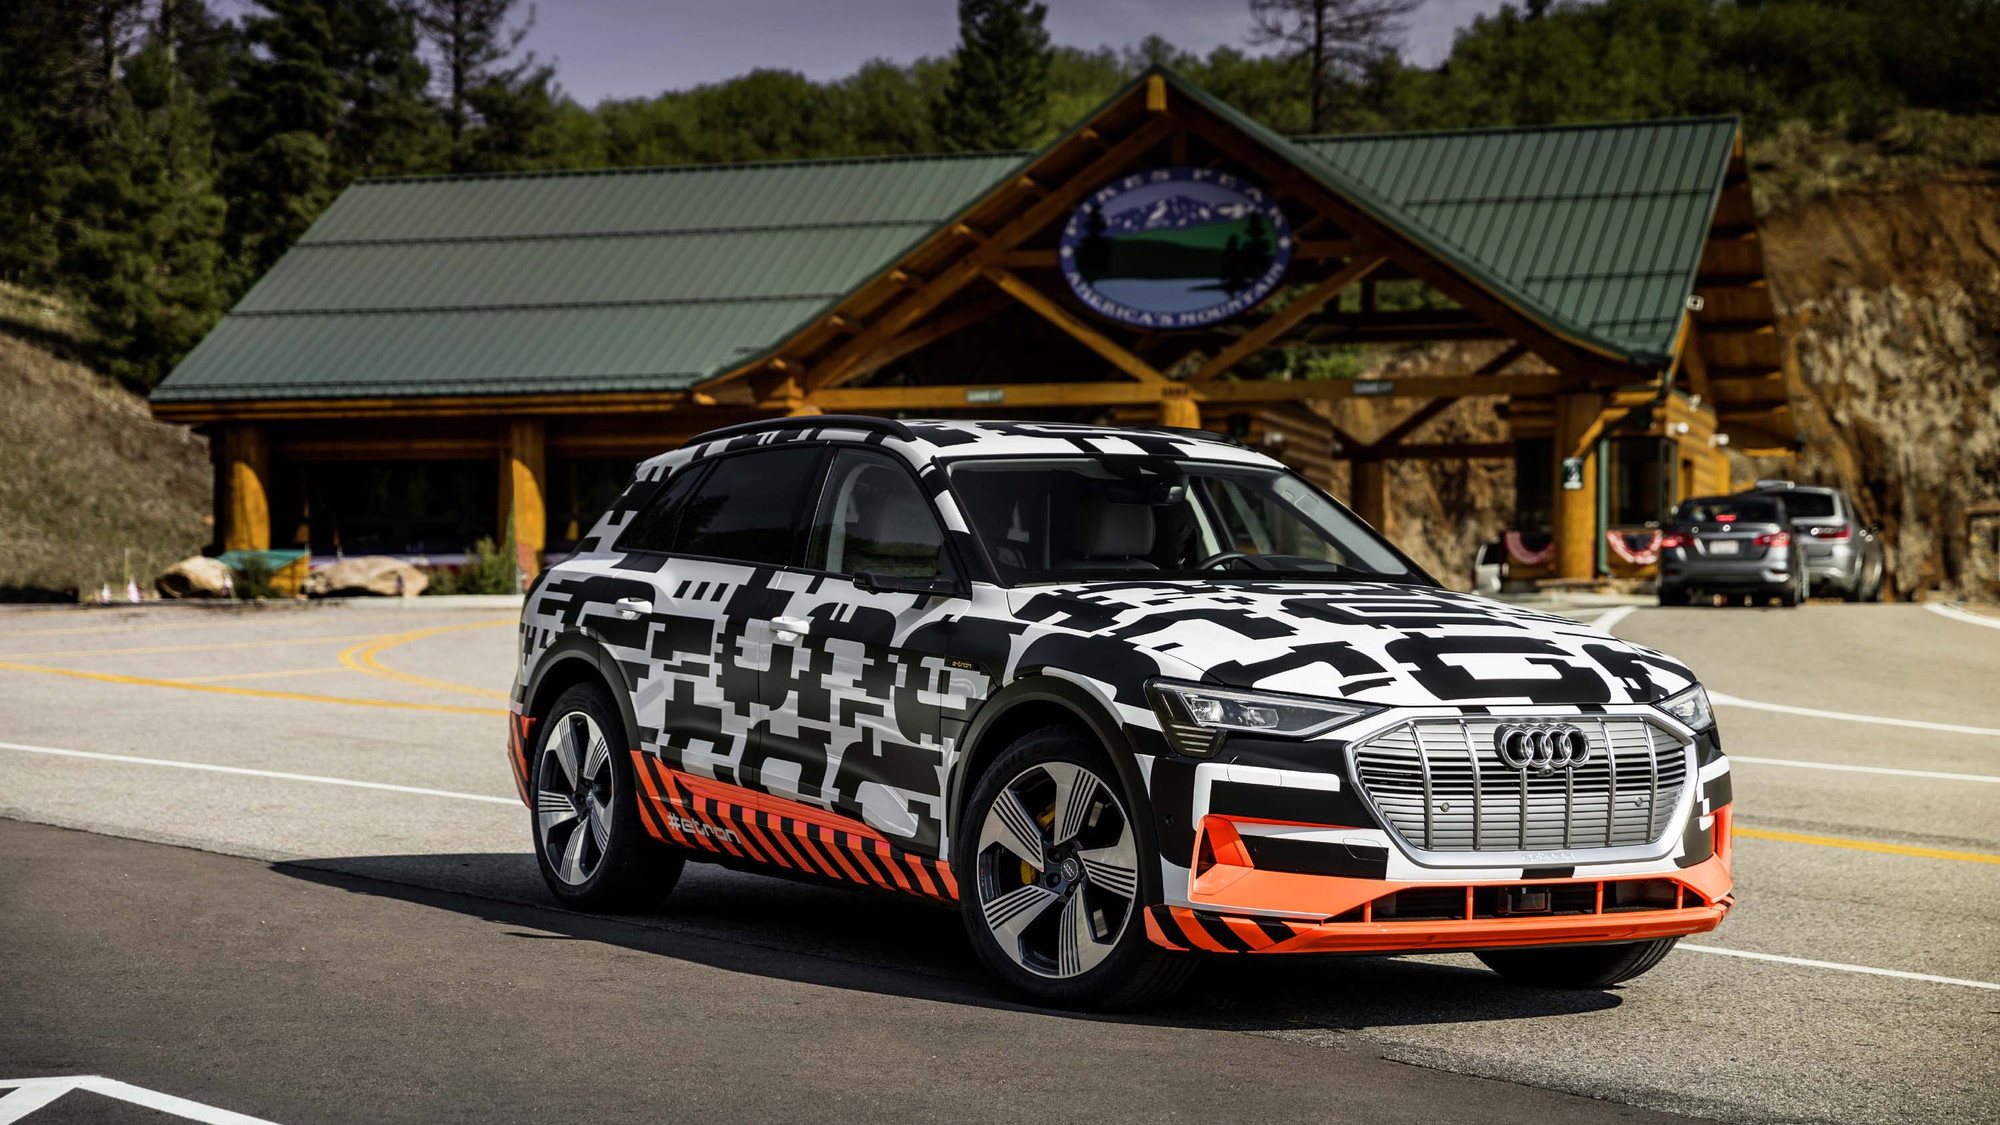 2019 Audi e-tron prototype drive, Pikes Peak